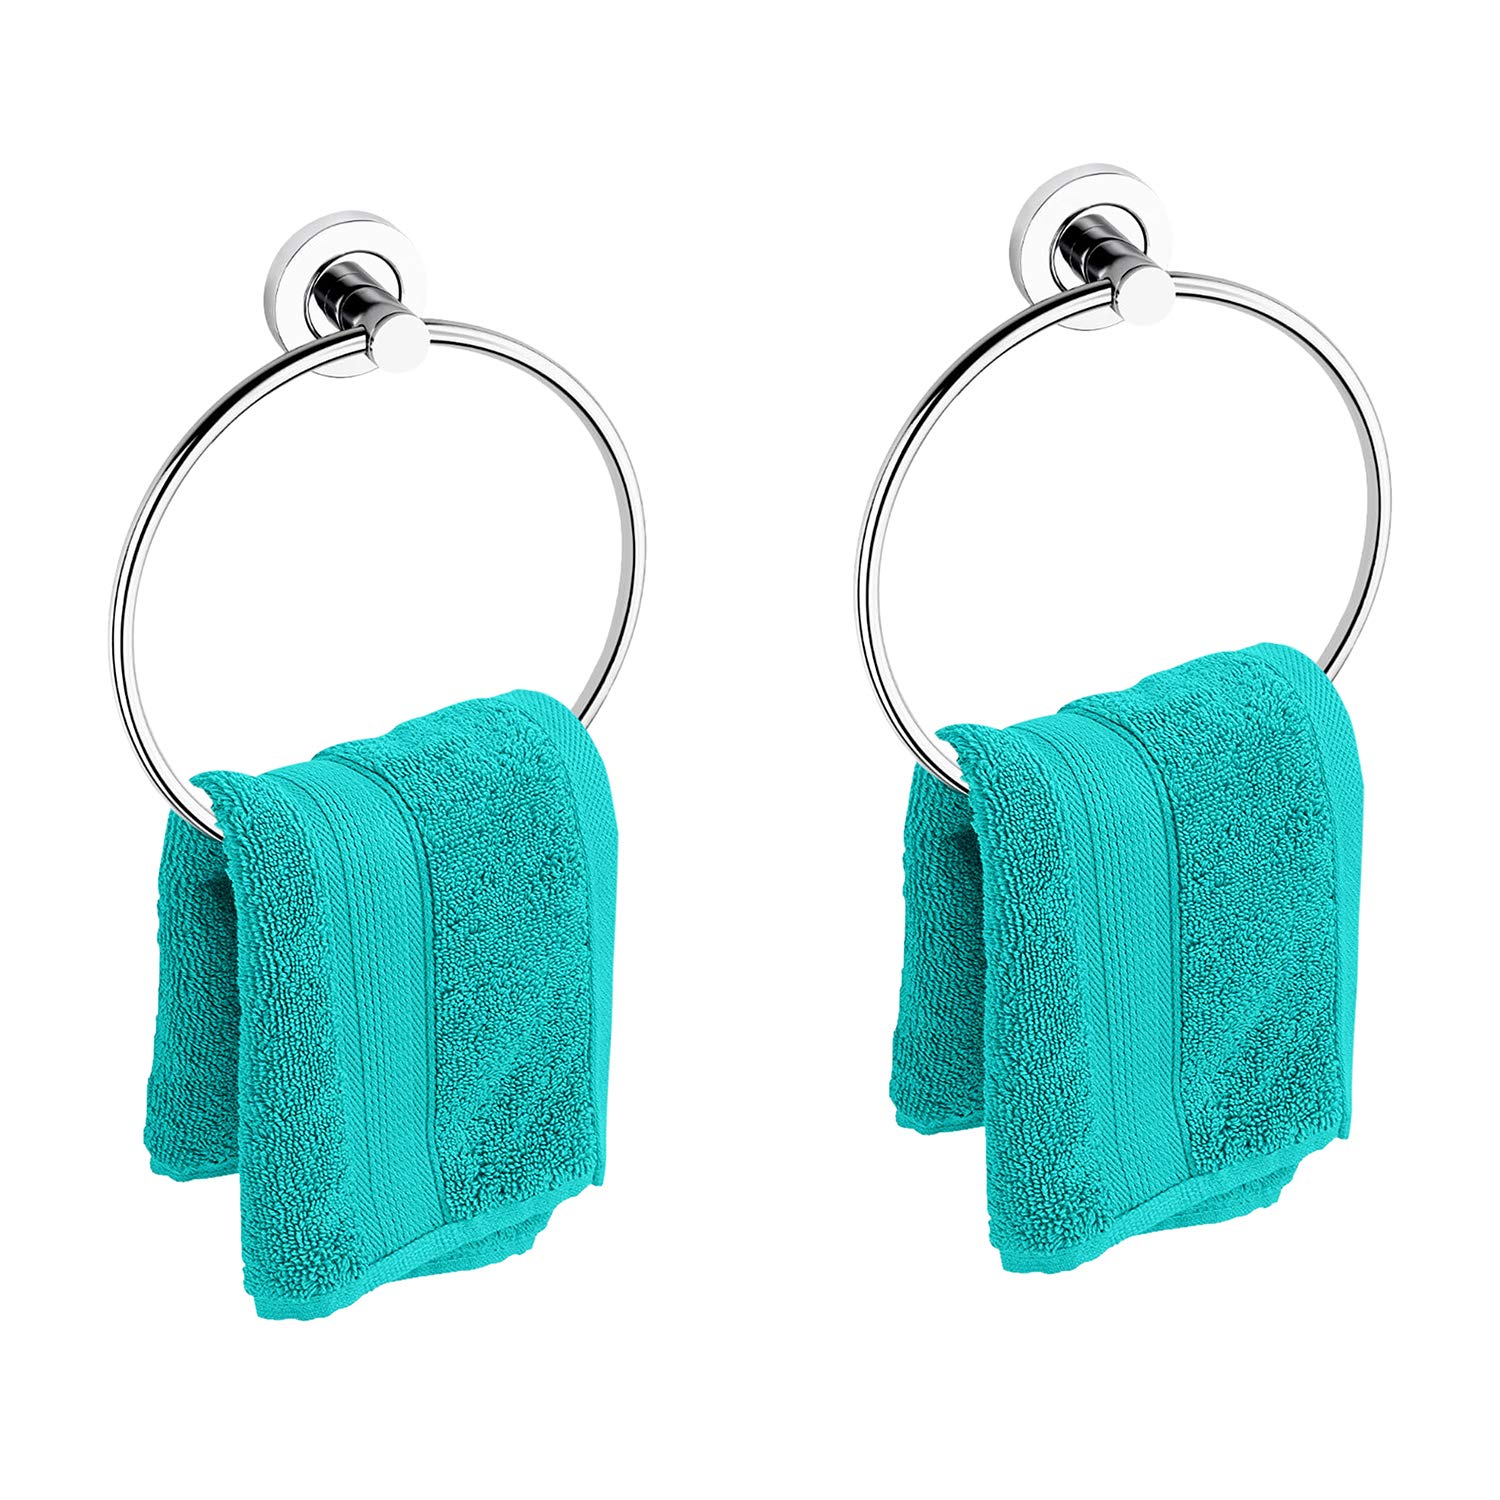 Stainless Steel Towel Rings